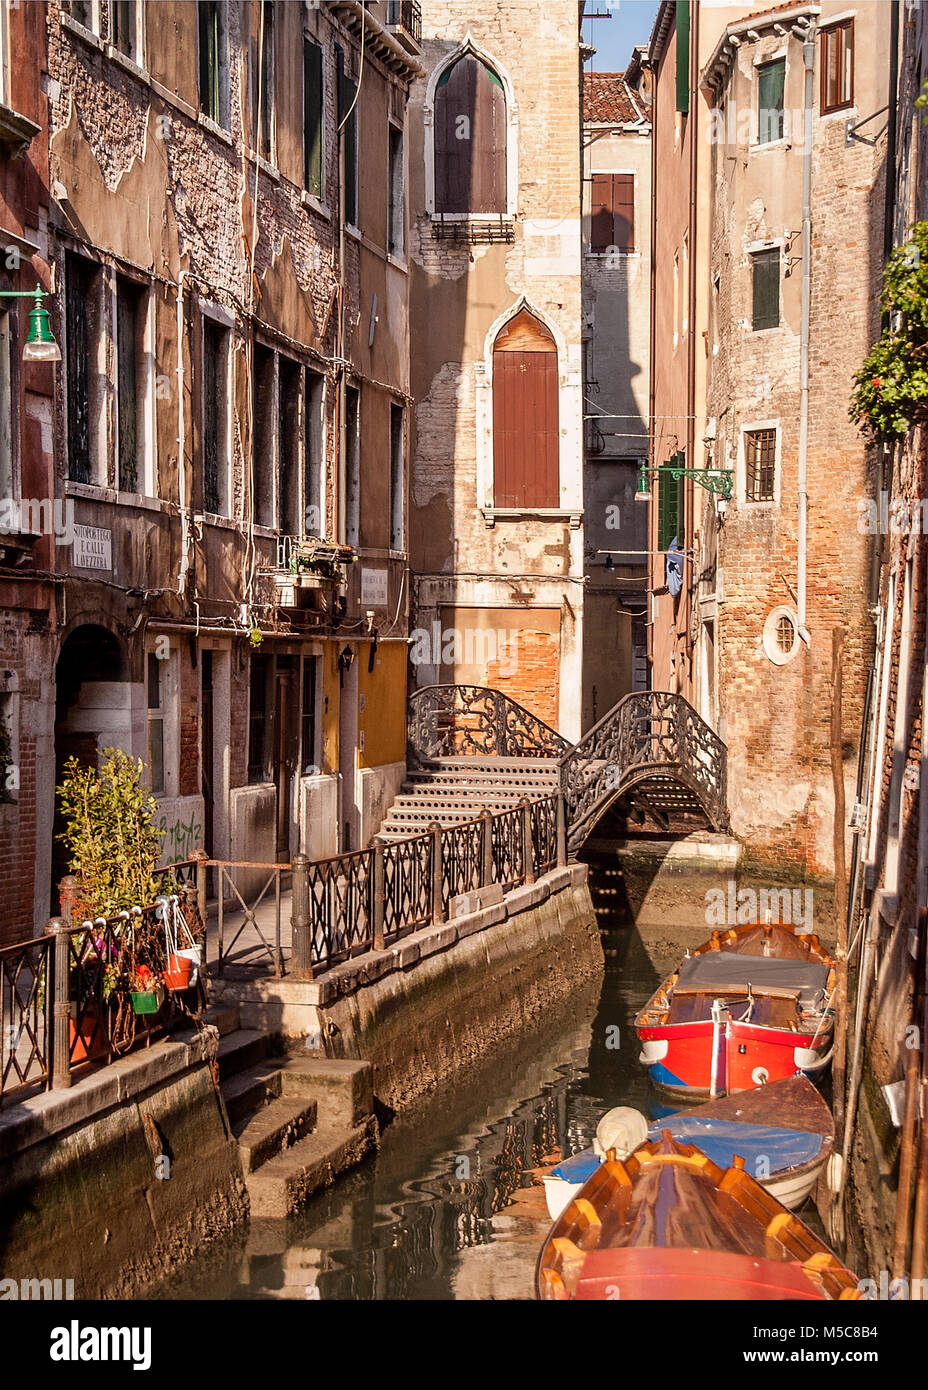 Venice,Italy Stock Photo